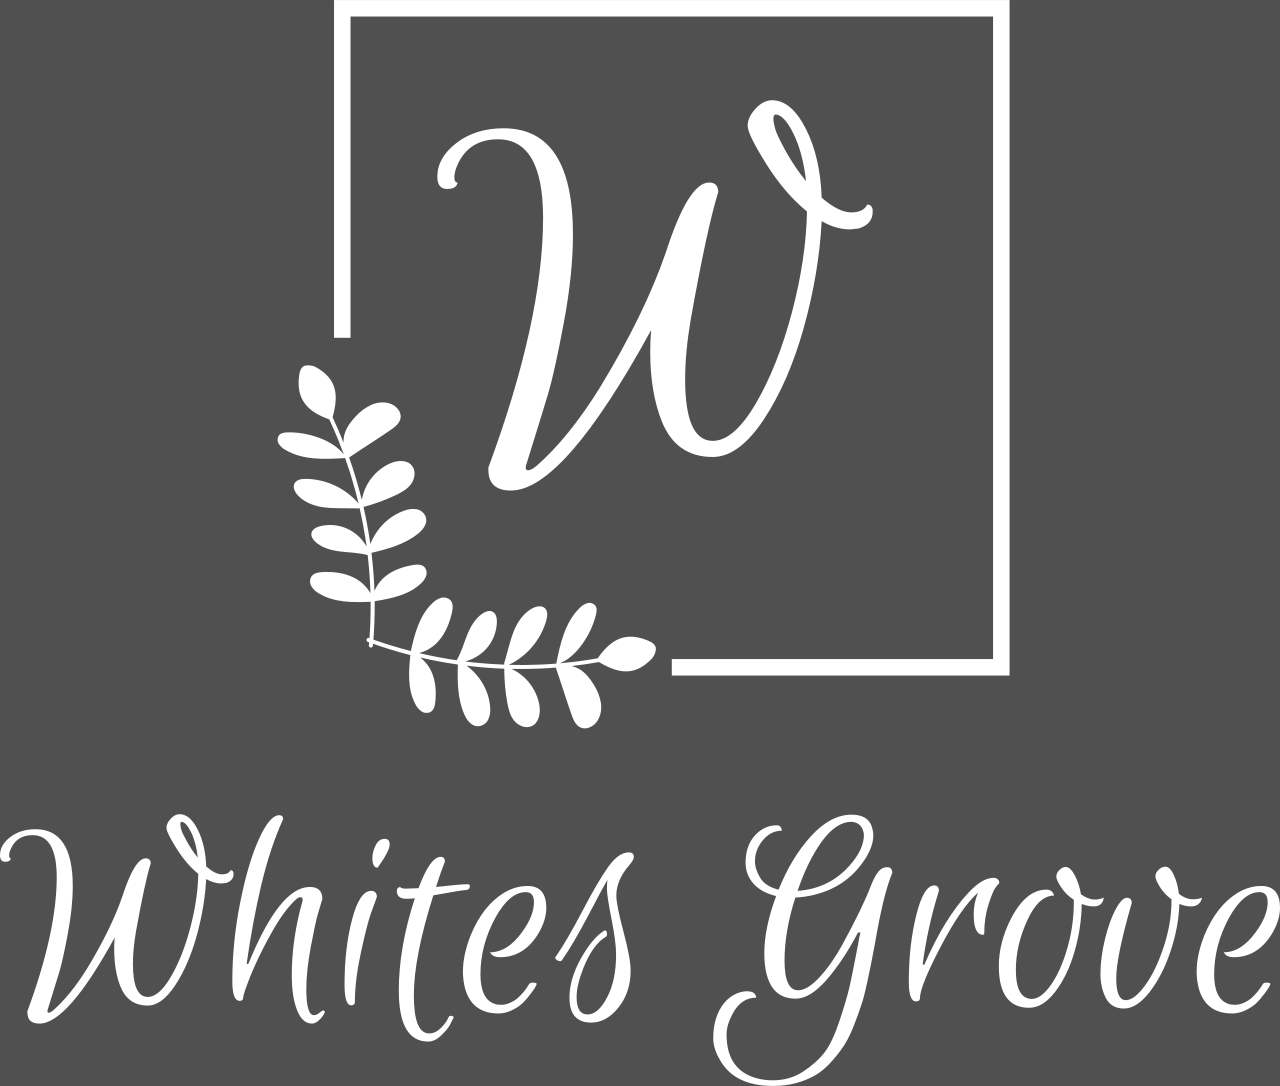 Whites Grove's logo